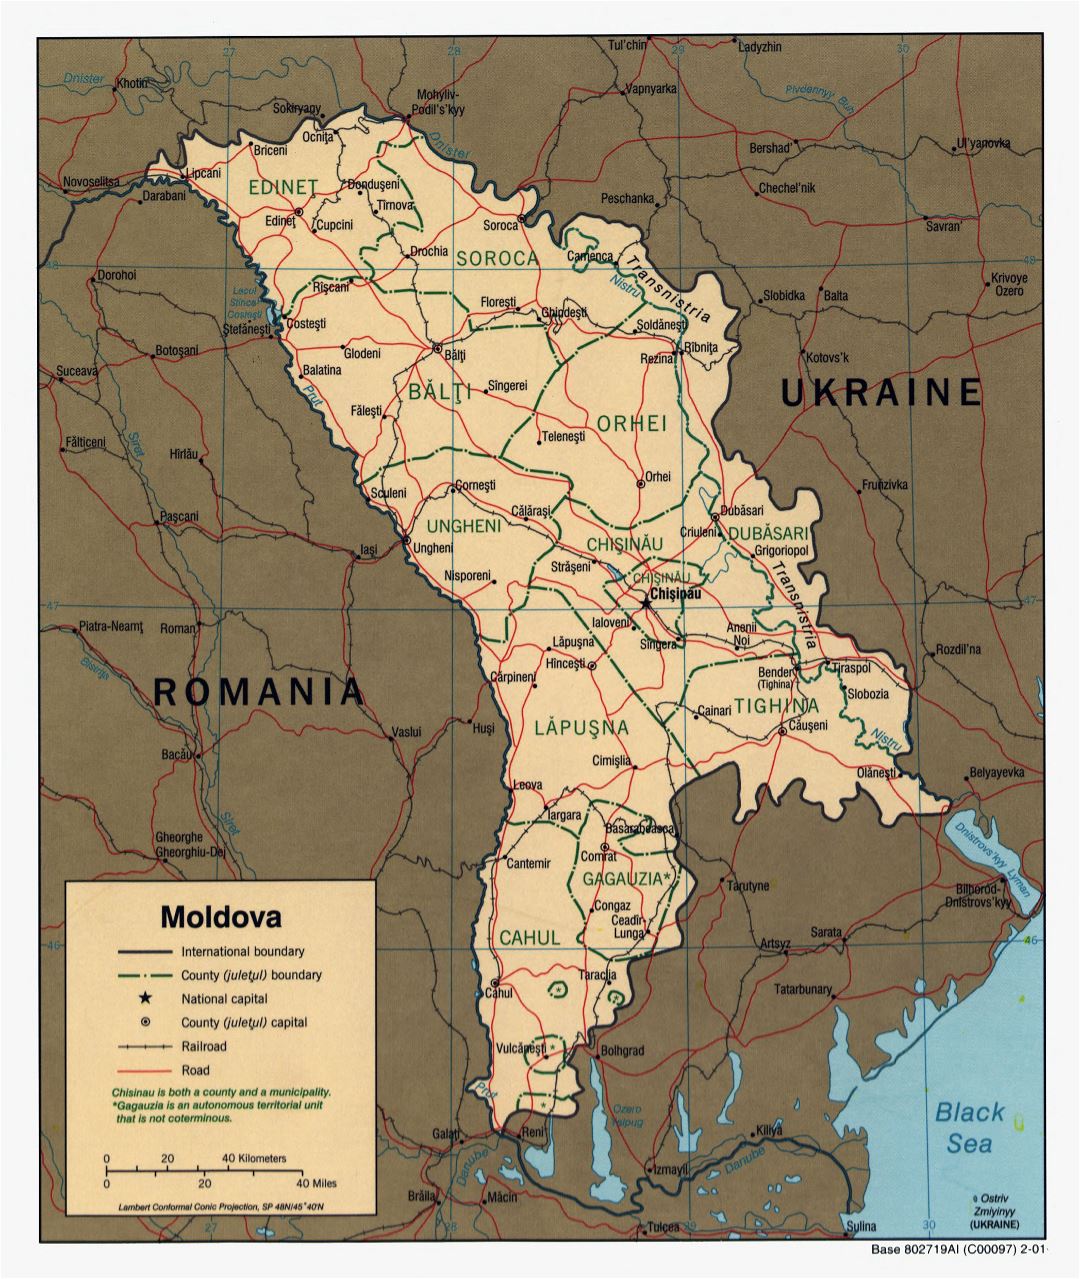 A gran escala mapa político y administrativo de Moldavia con carreteras, ferrocarriles y principales ciudades - 2001